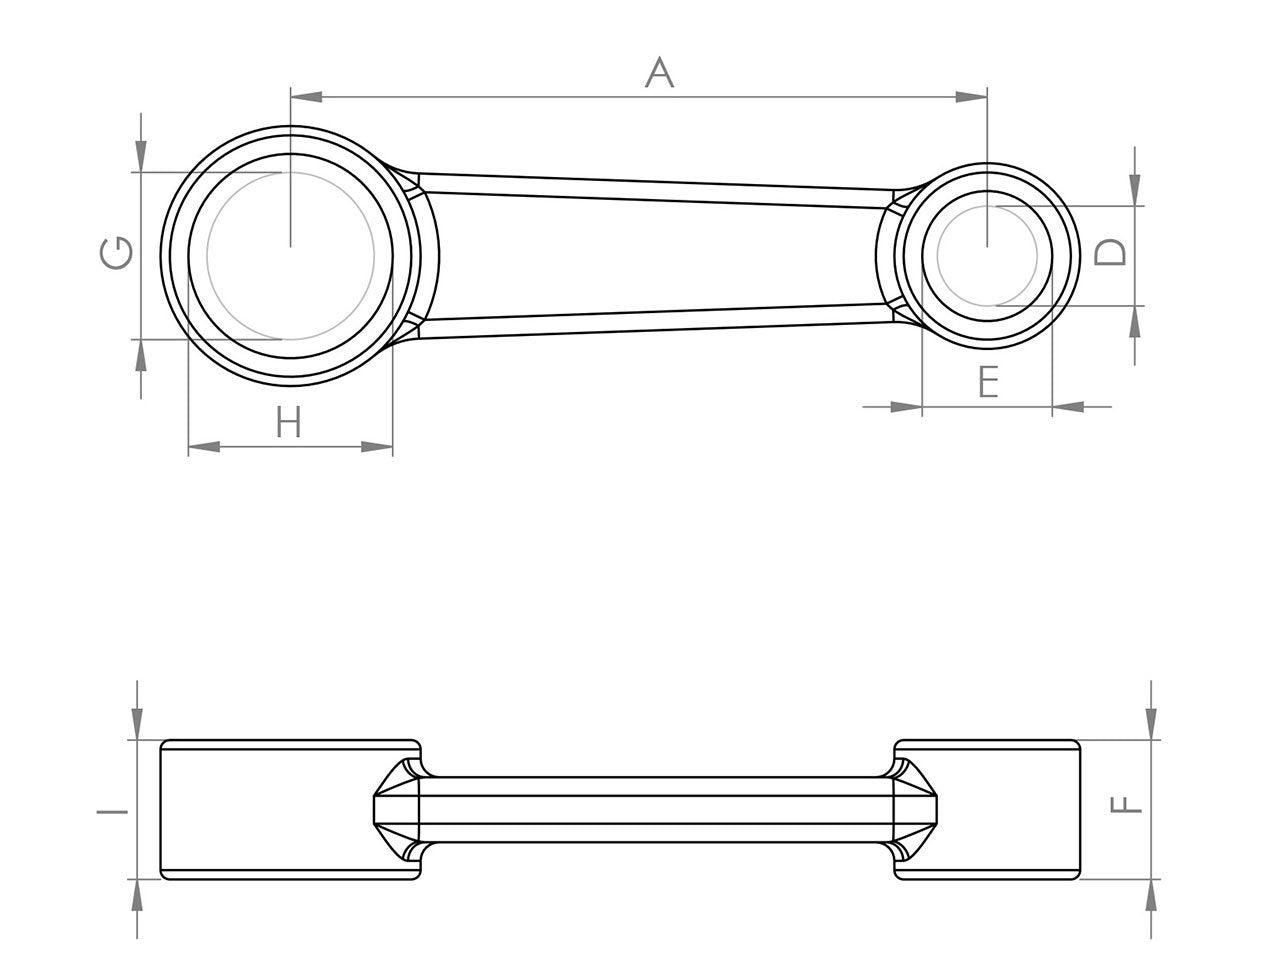 Zeichnung Barikit Pleuel für einen Suzuki RM 125 Motor mit Bemaßung.